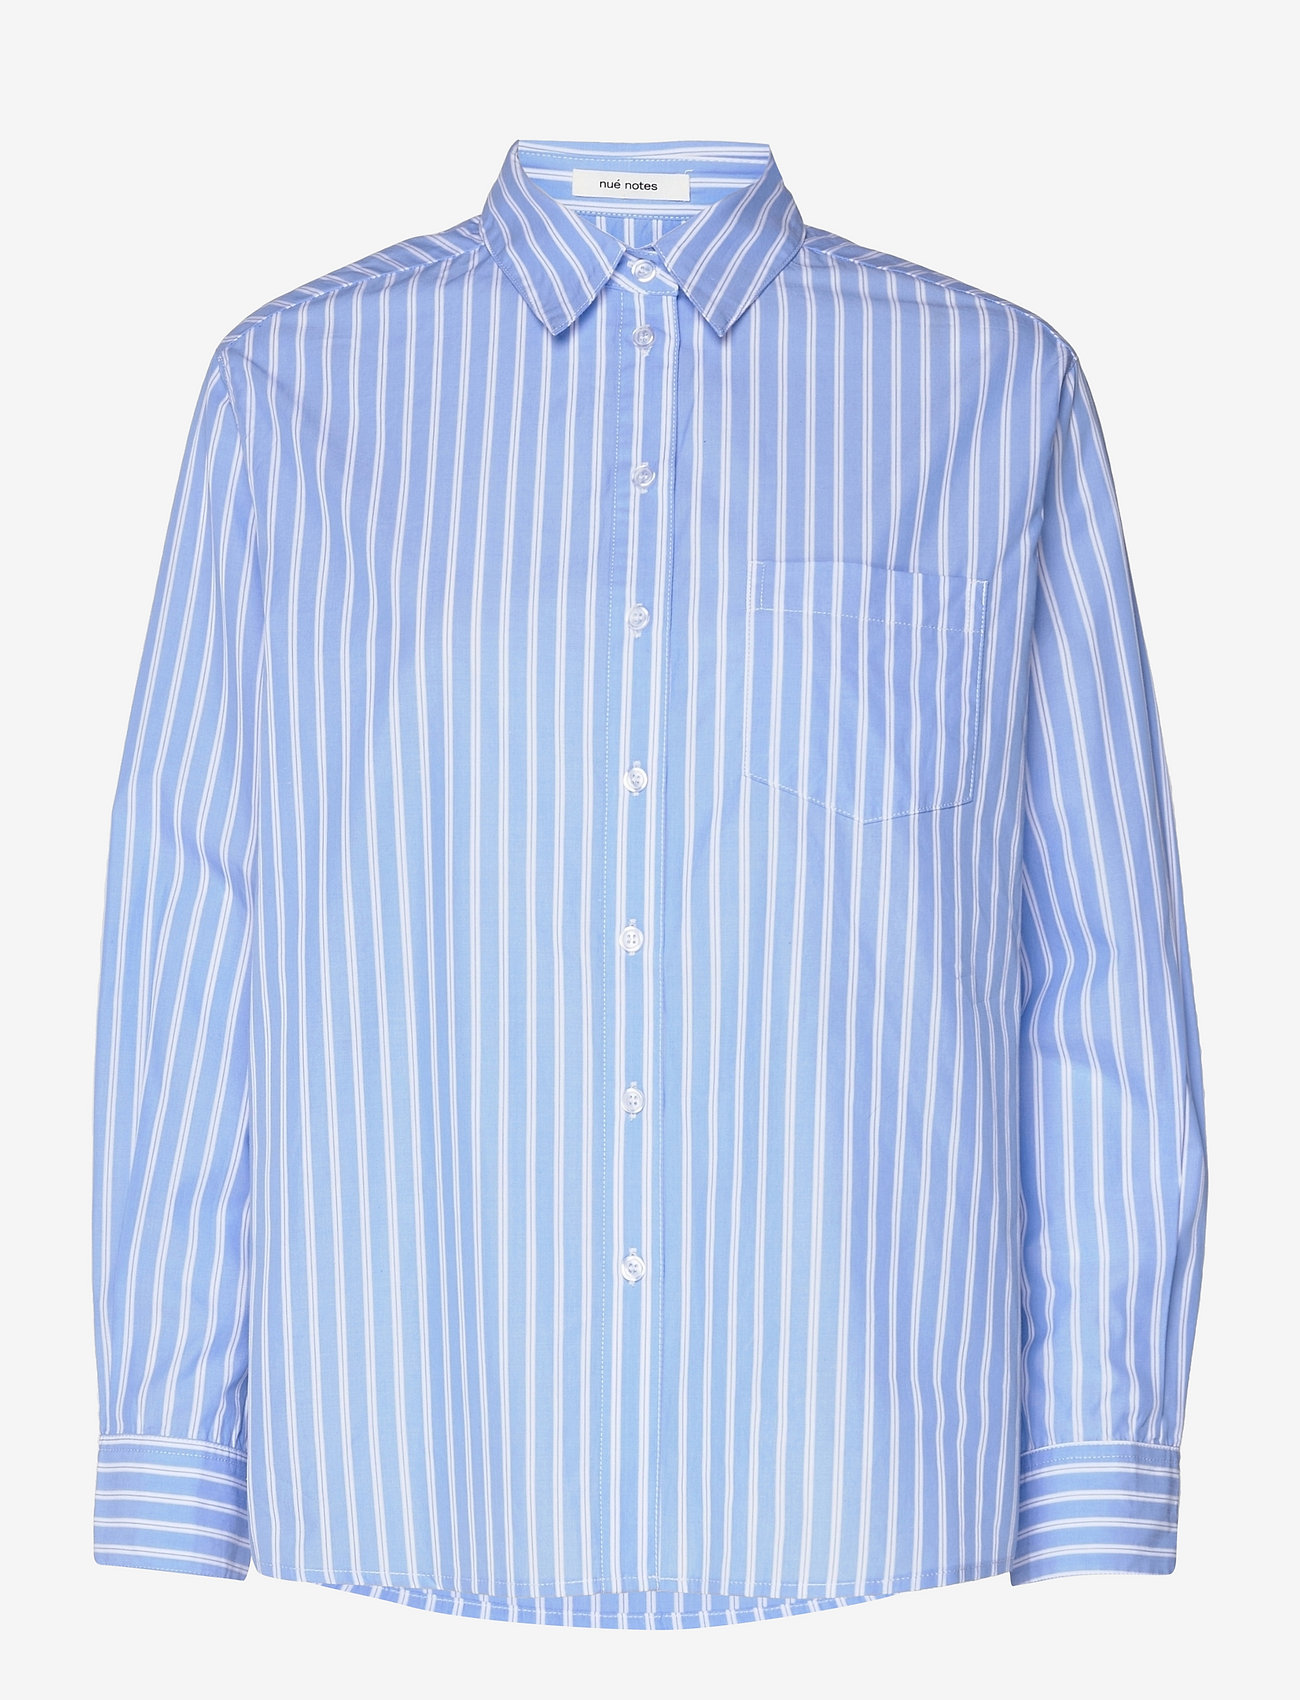 nué notes - Elon Shirt - langærmede skjorter - blue stripe - 0